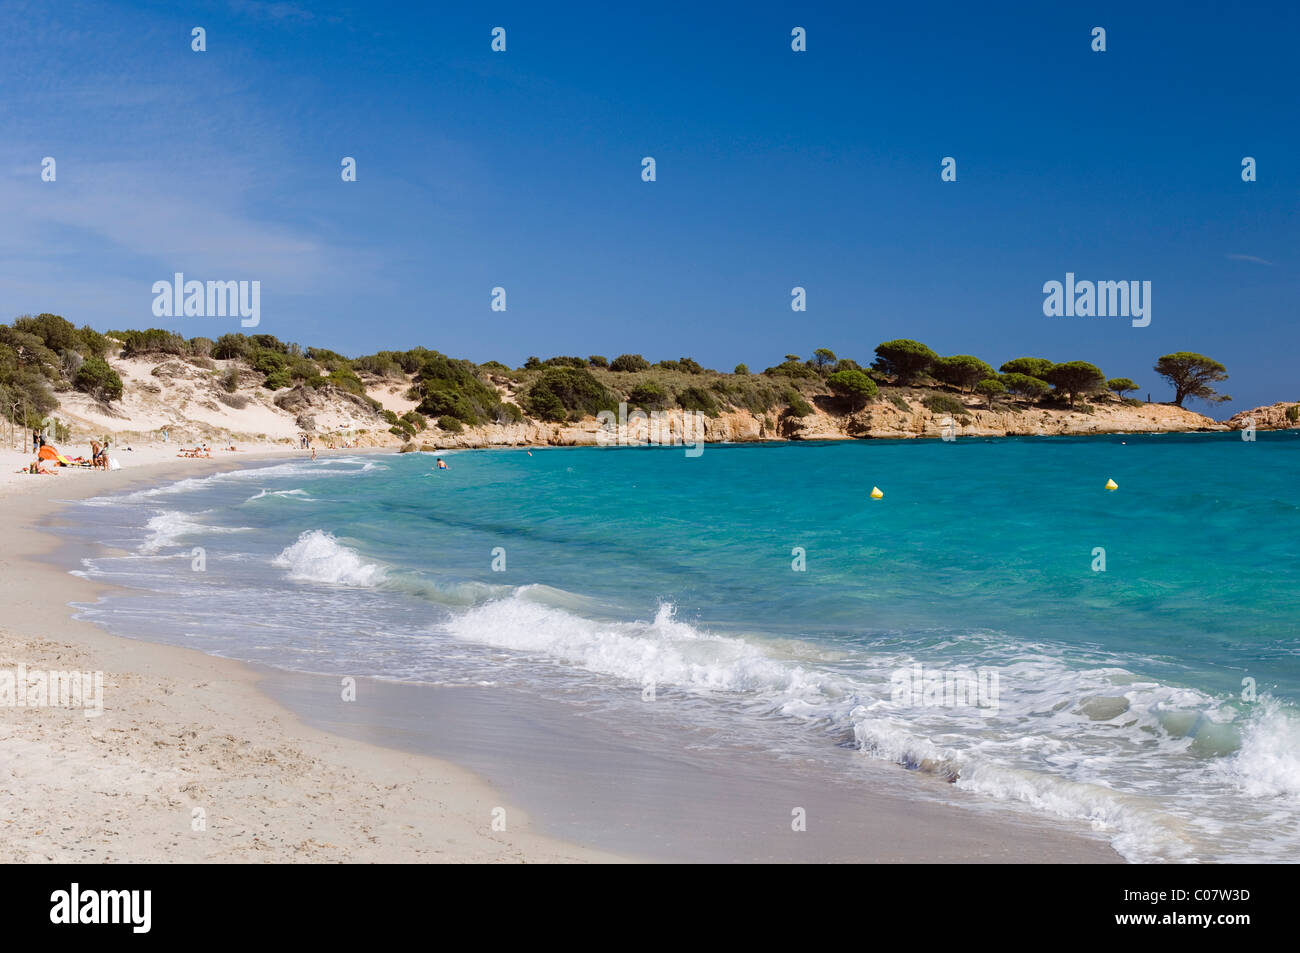 Plage de sable fin, de la baie de Palombaggia, Côte Est, Corse, France, Europe Banque D'Images